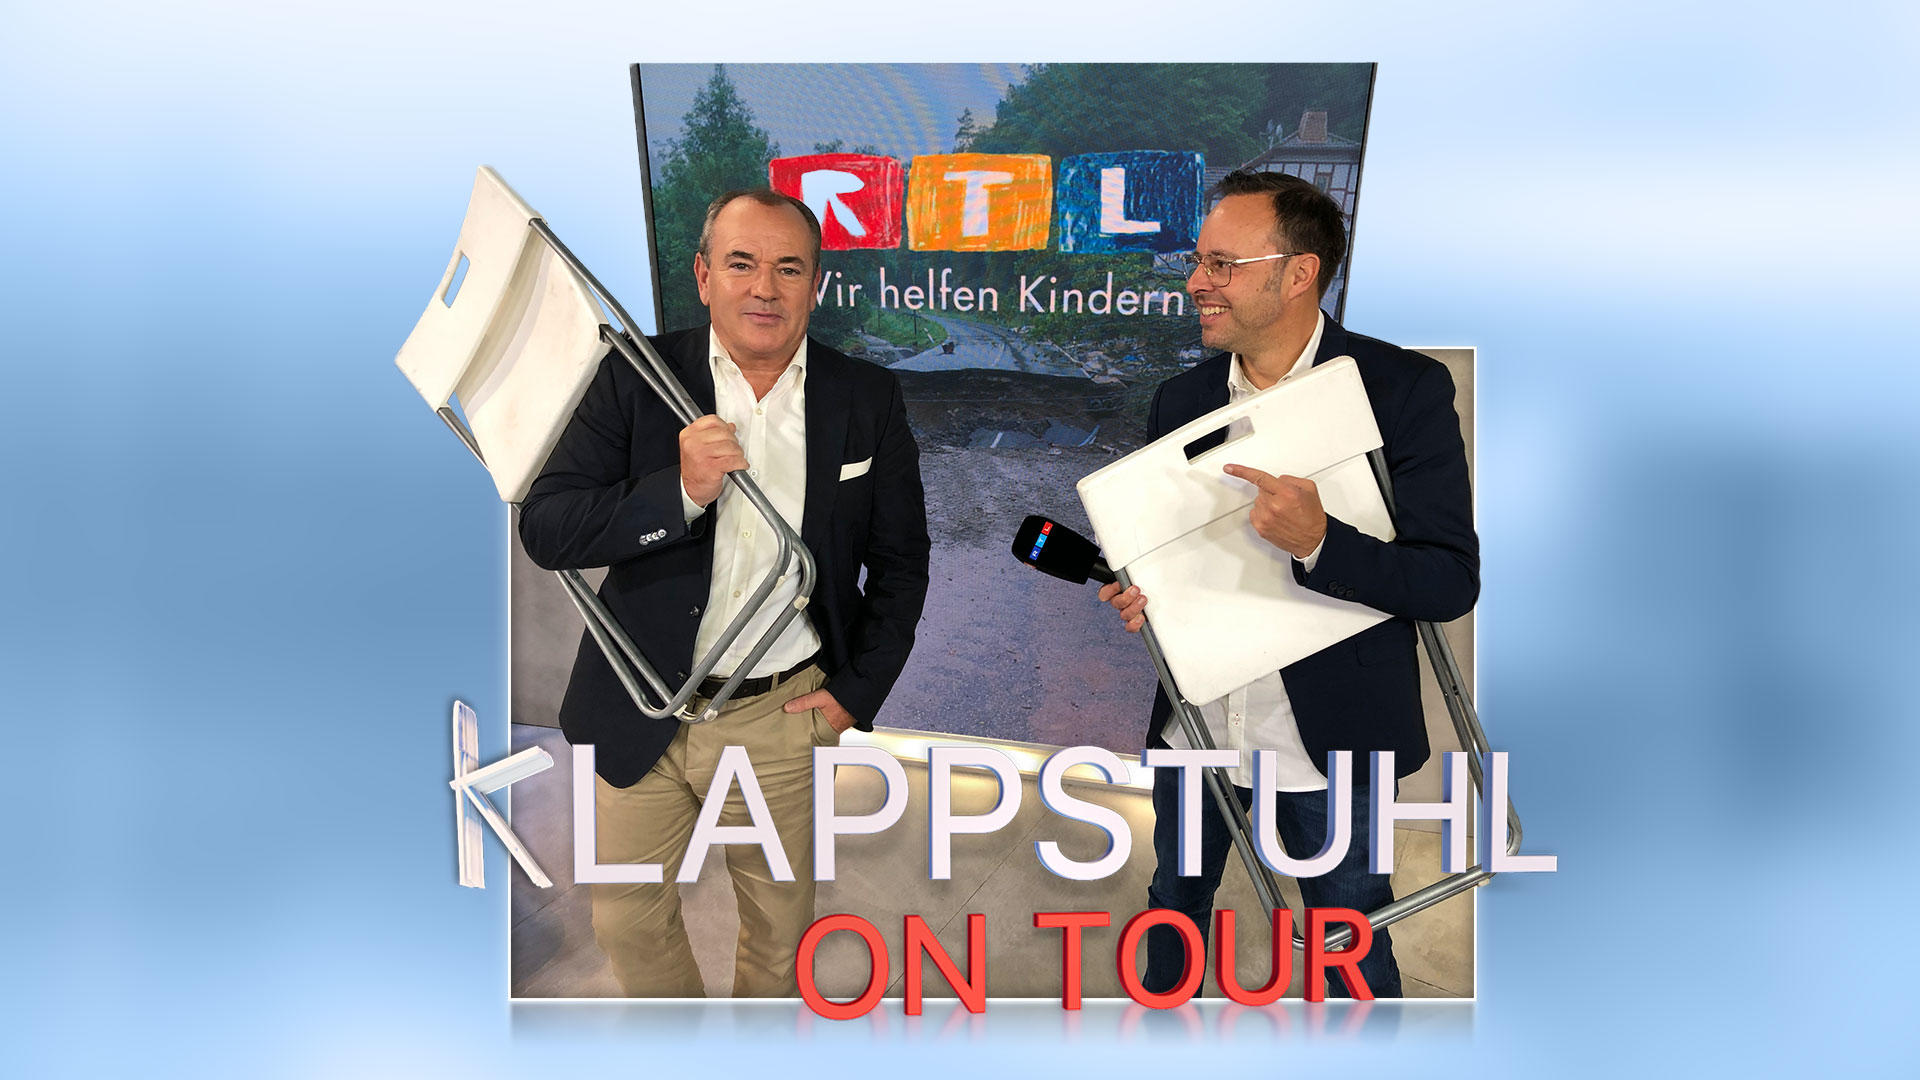 Till Quitmann trifft Wolfram Kons Klappstuhl on Tour